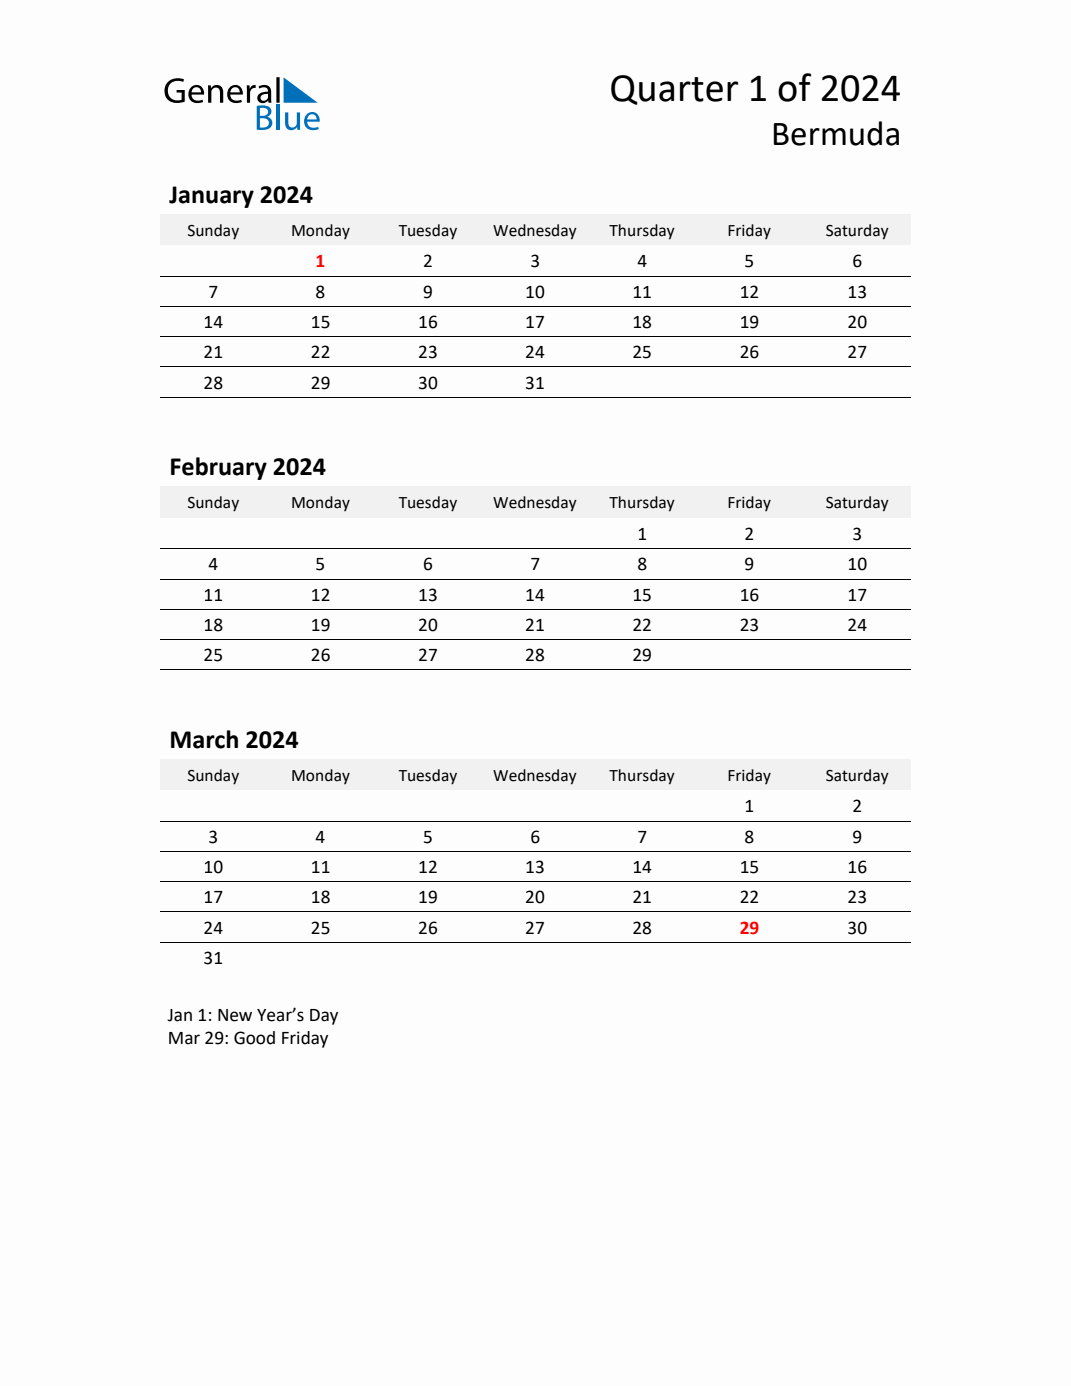 q1-2024-quarterly-calendar-with-bermuda-holidays